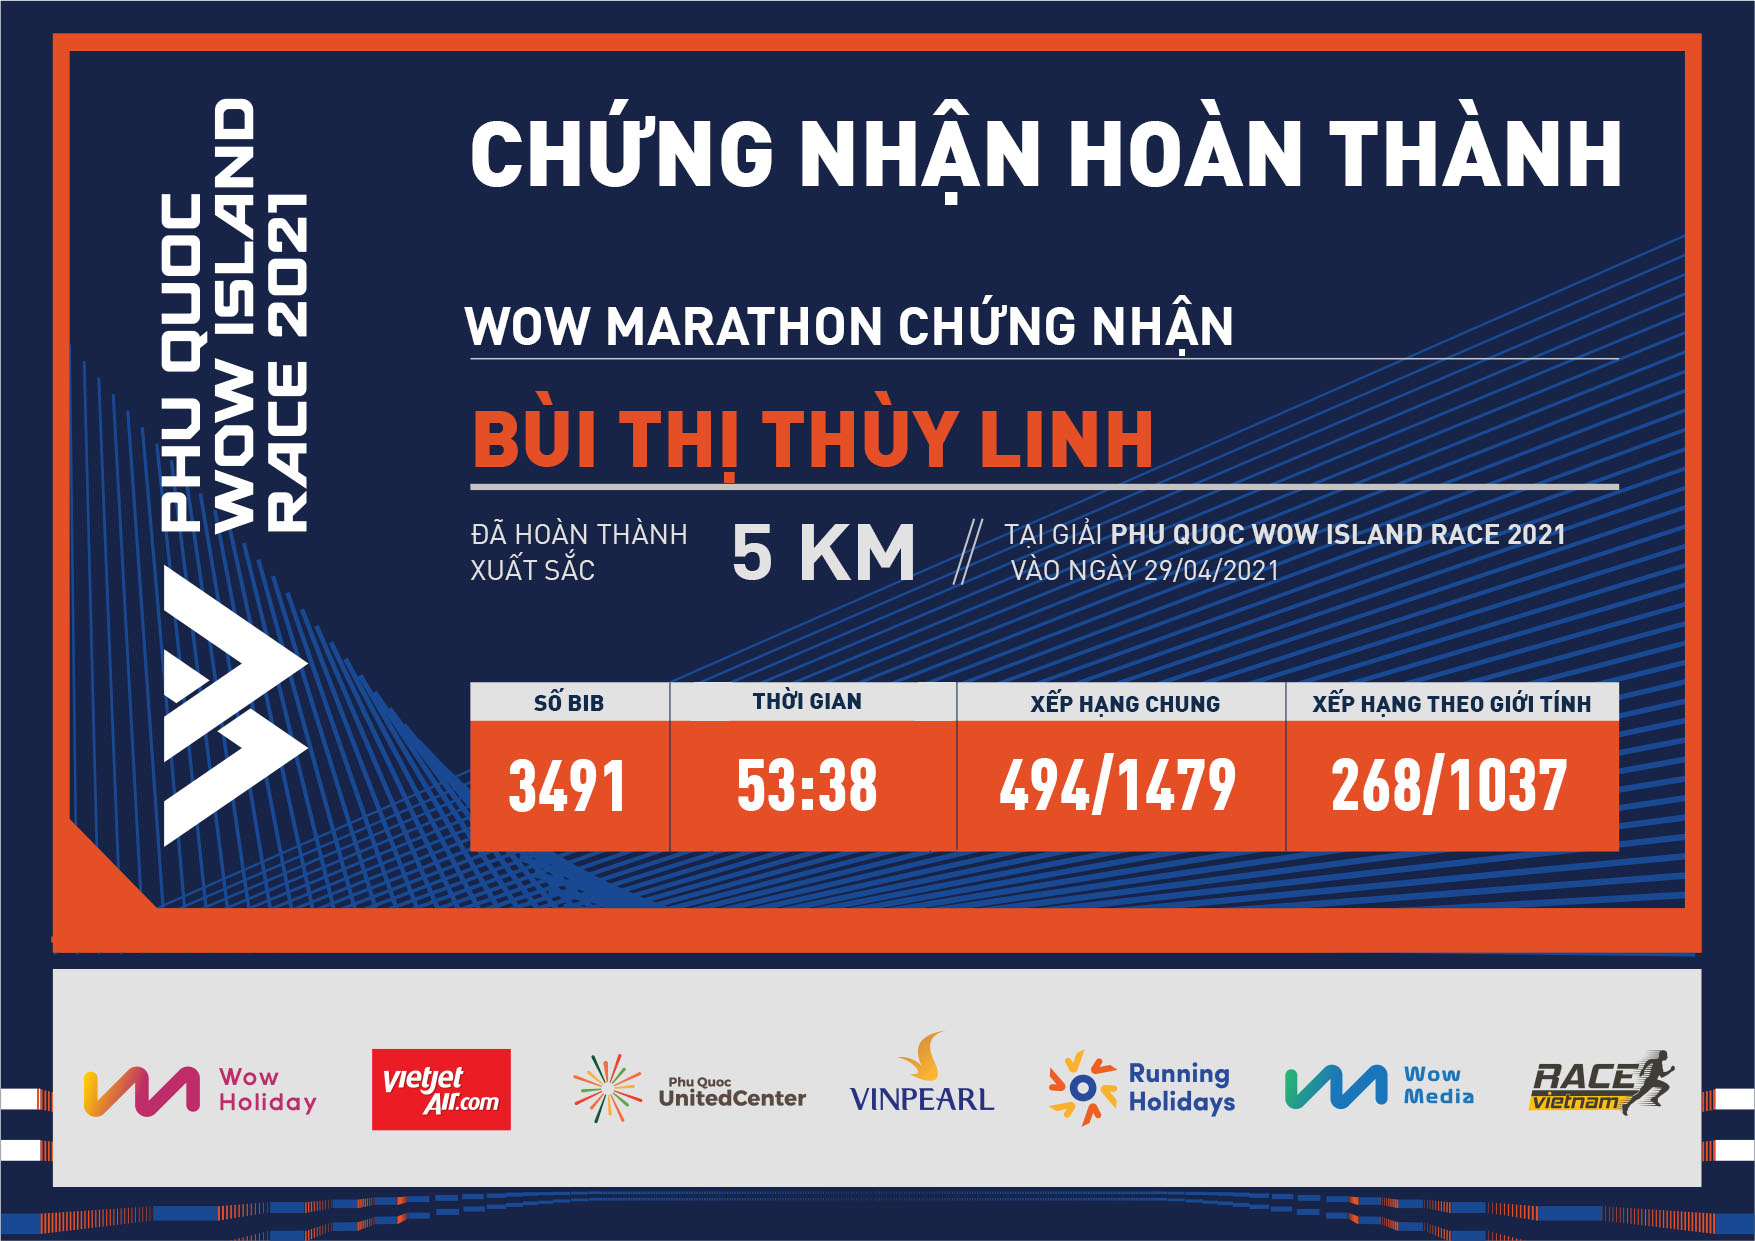 3491 - Bùi Thị Thùy Linh